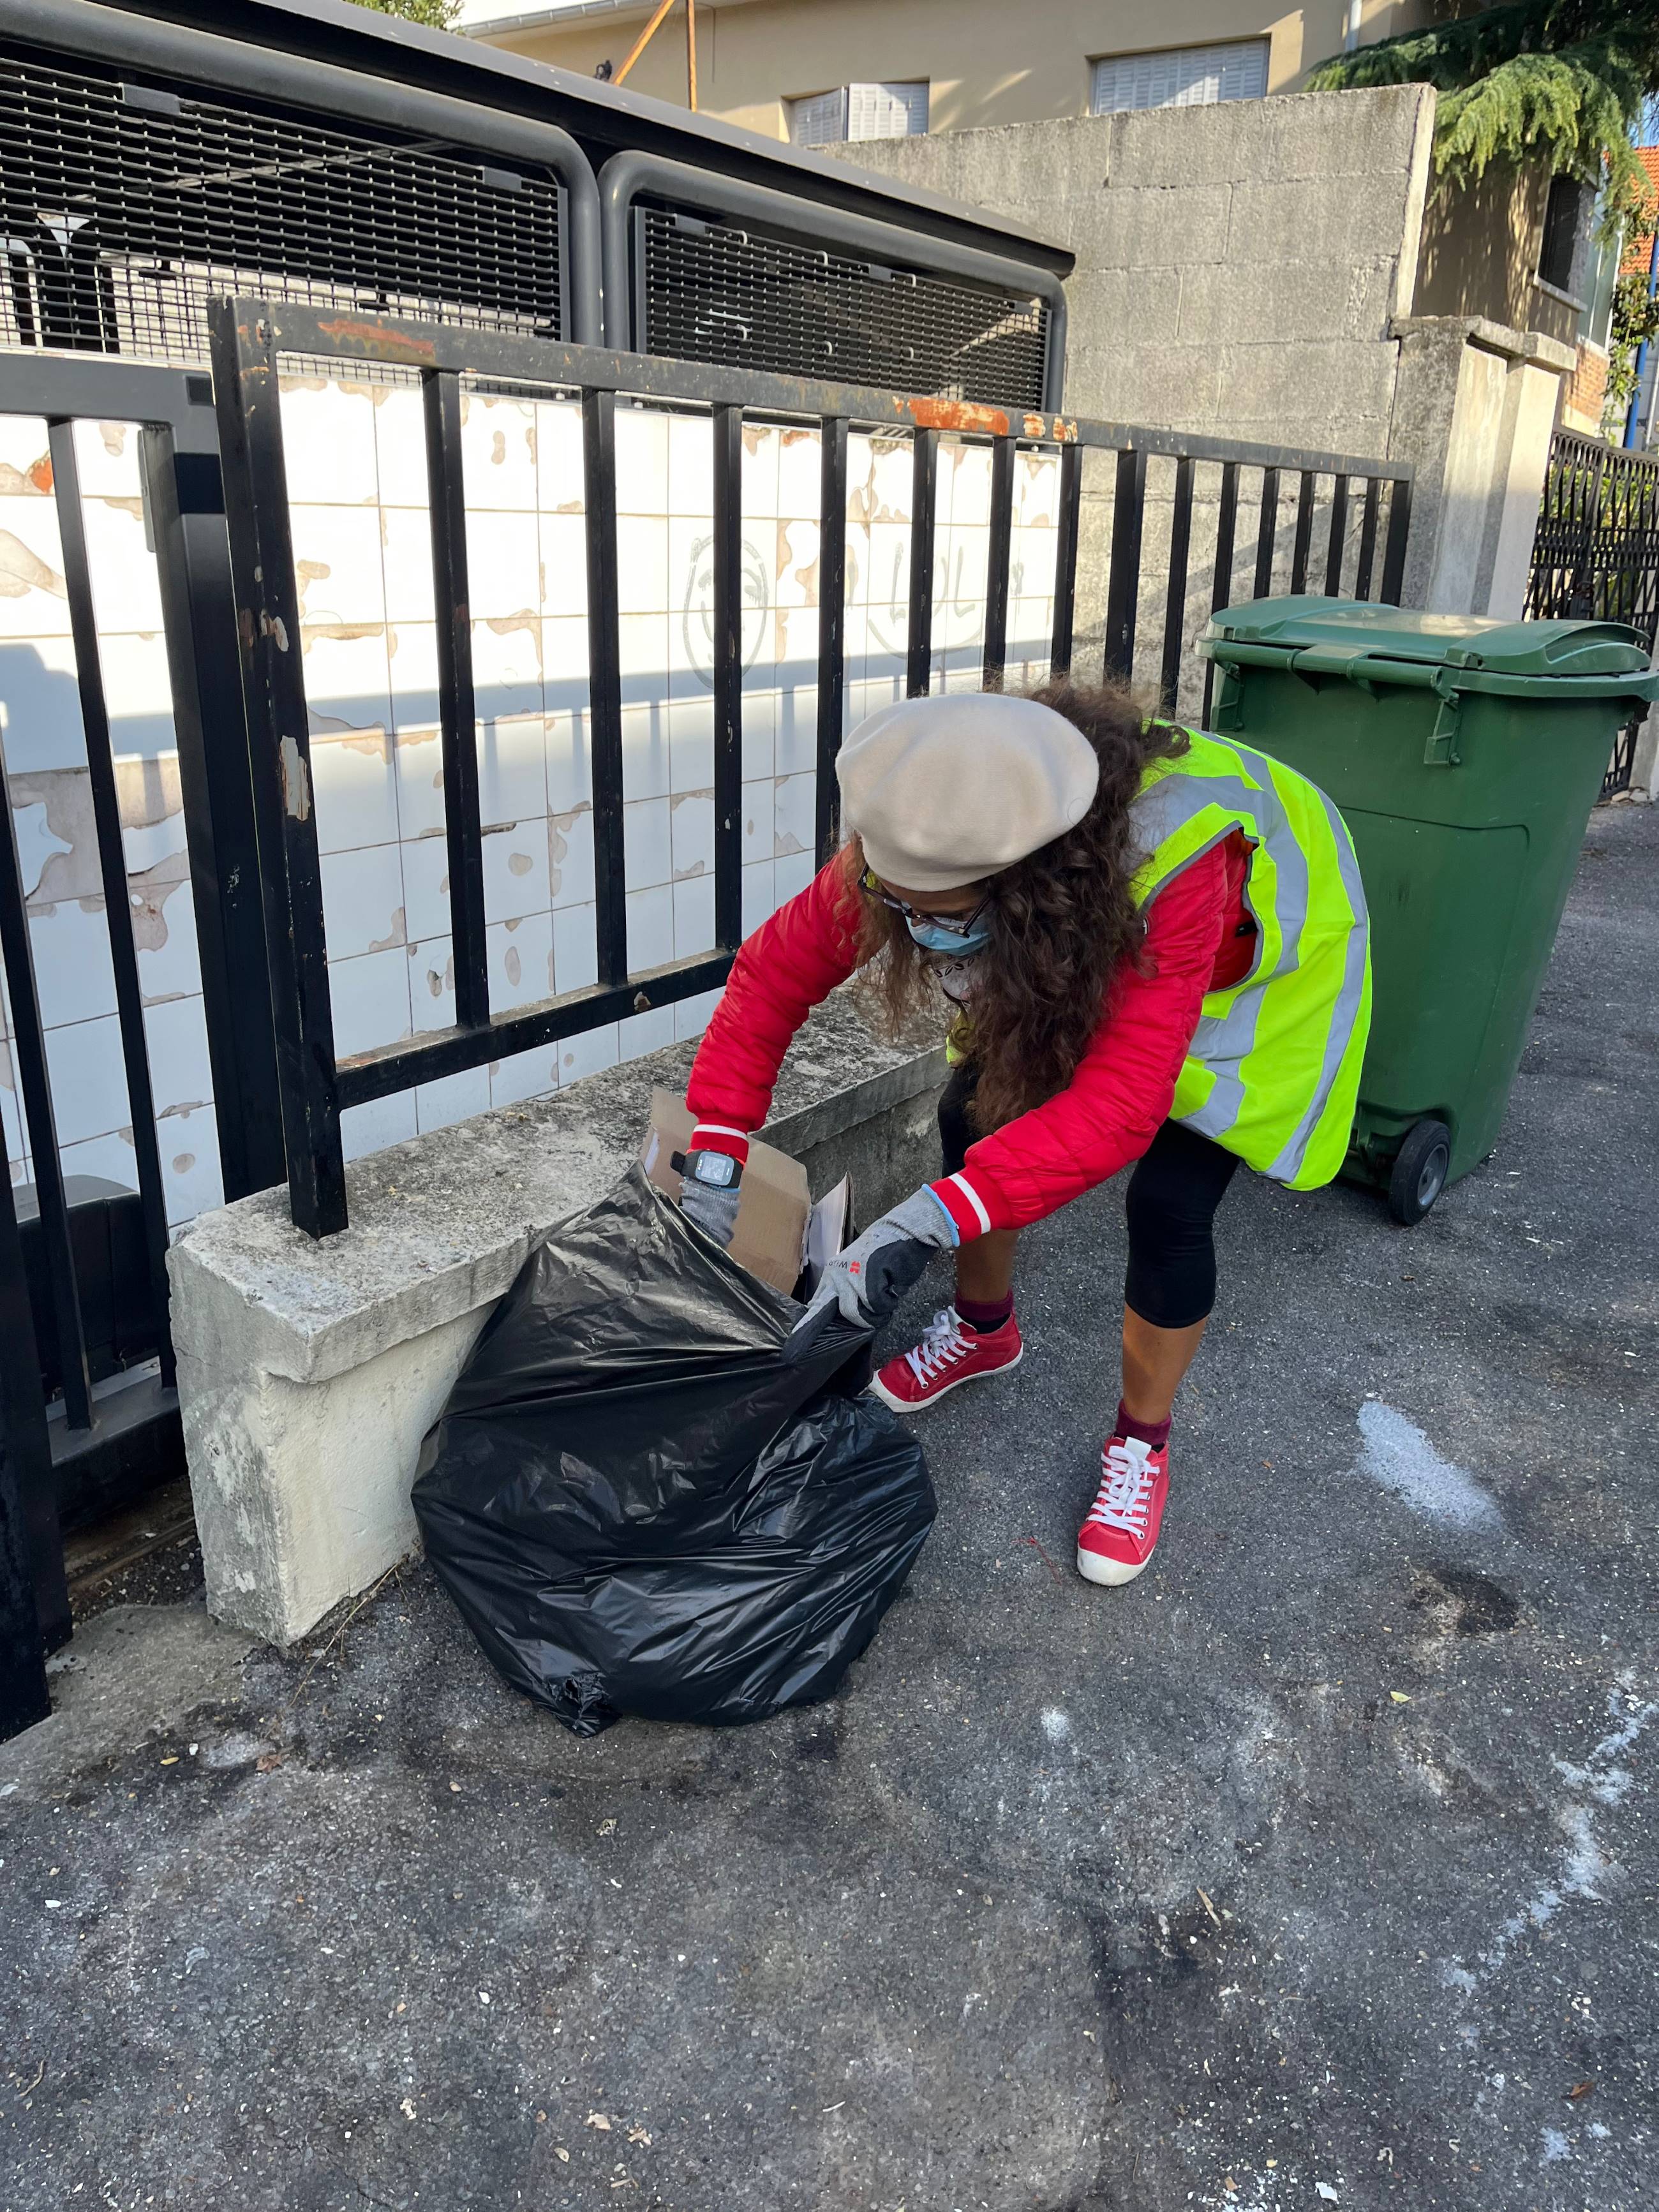 Retraites : le problème des poubelles à Paris n'est pas réglé